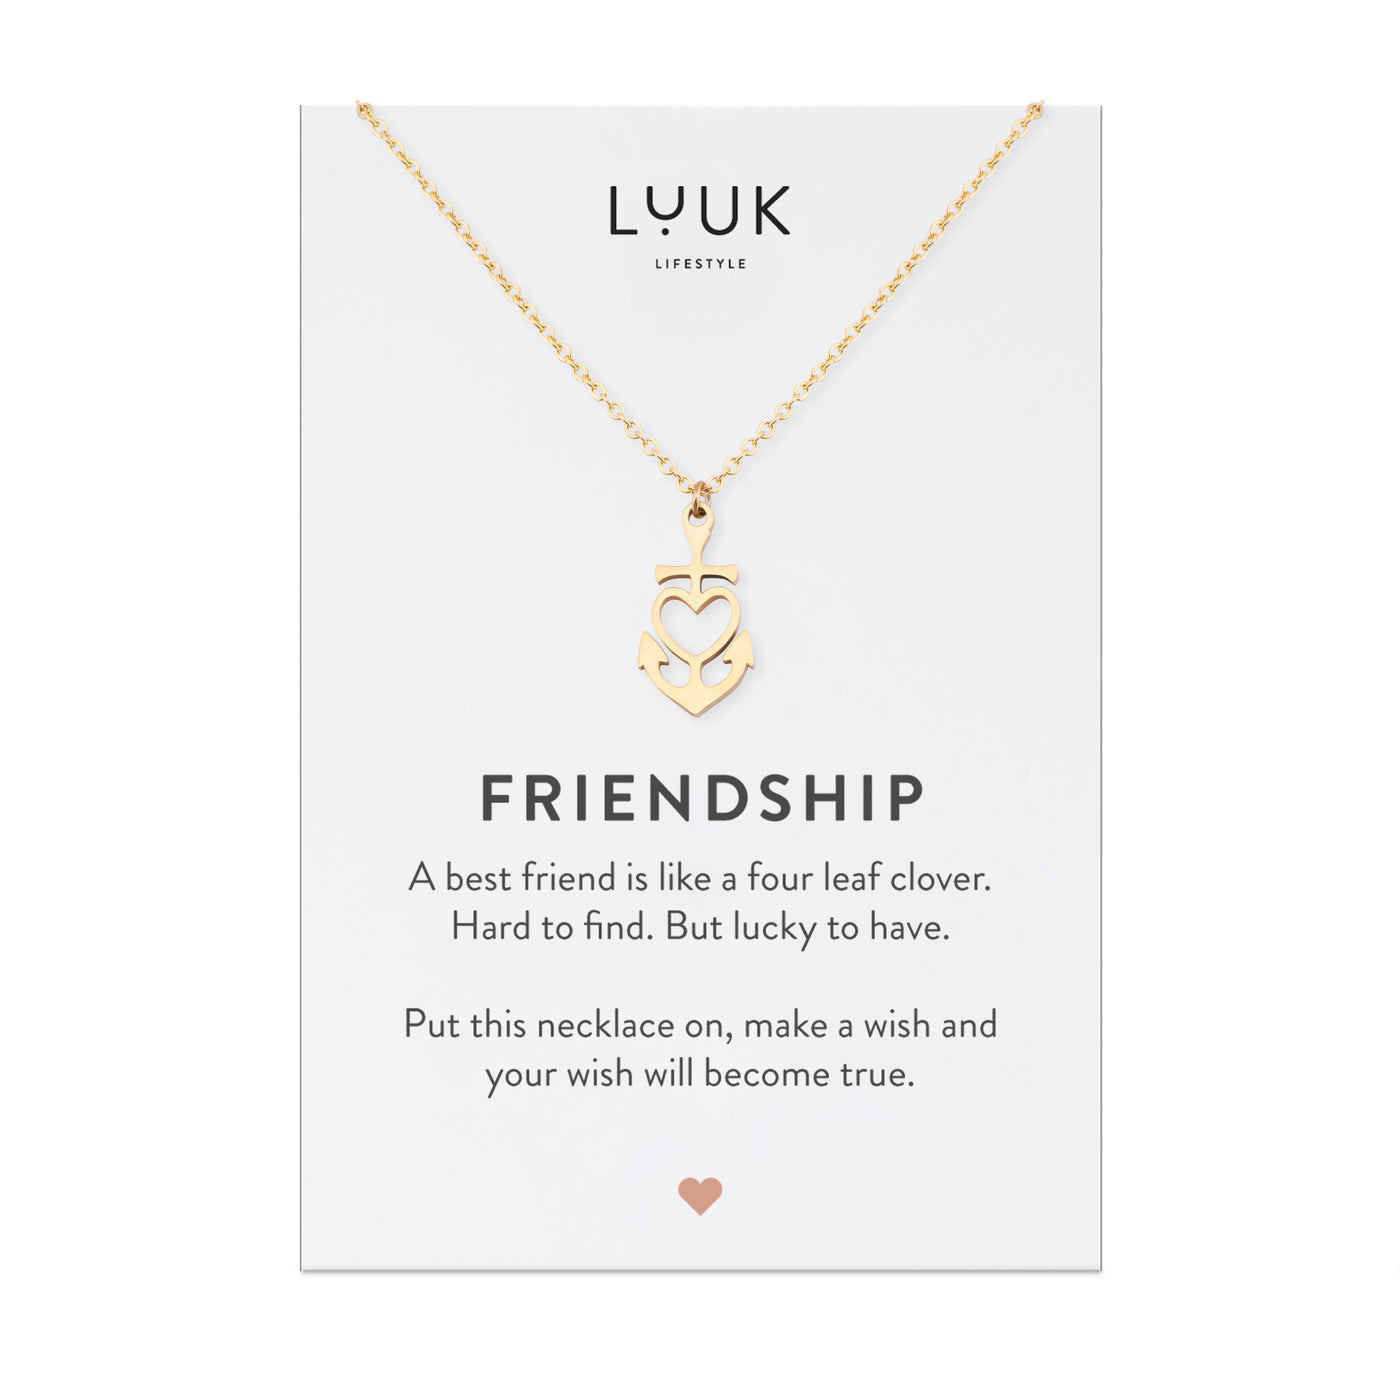 Vergoldete Herz-Anker Anhänger Halskette auf Friendship Spruchkarte von der Brand Luuk Lifestyle